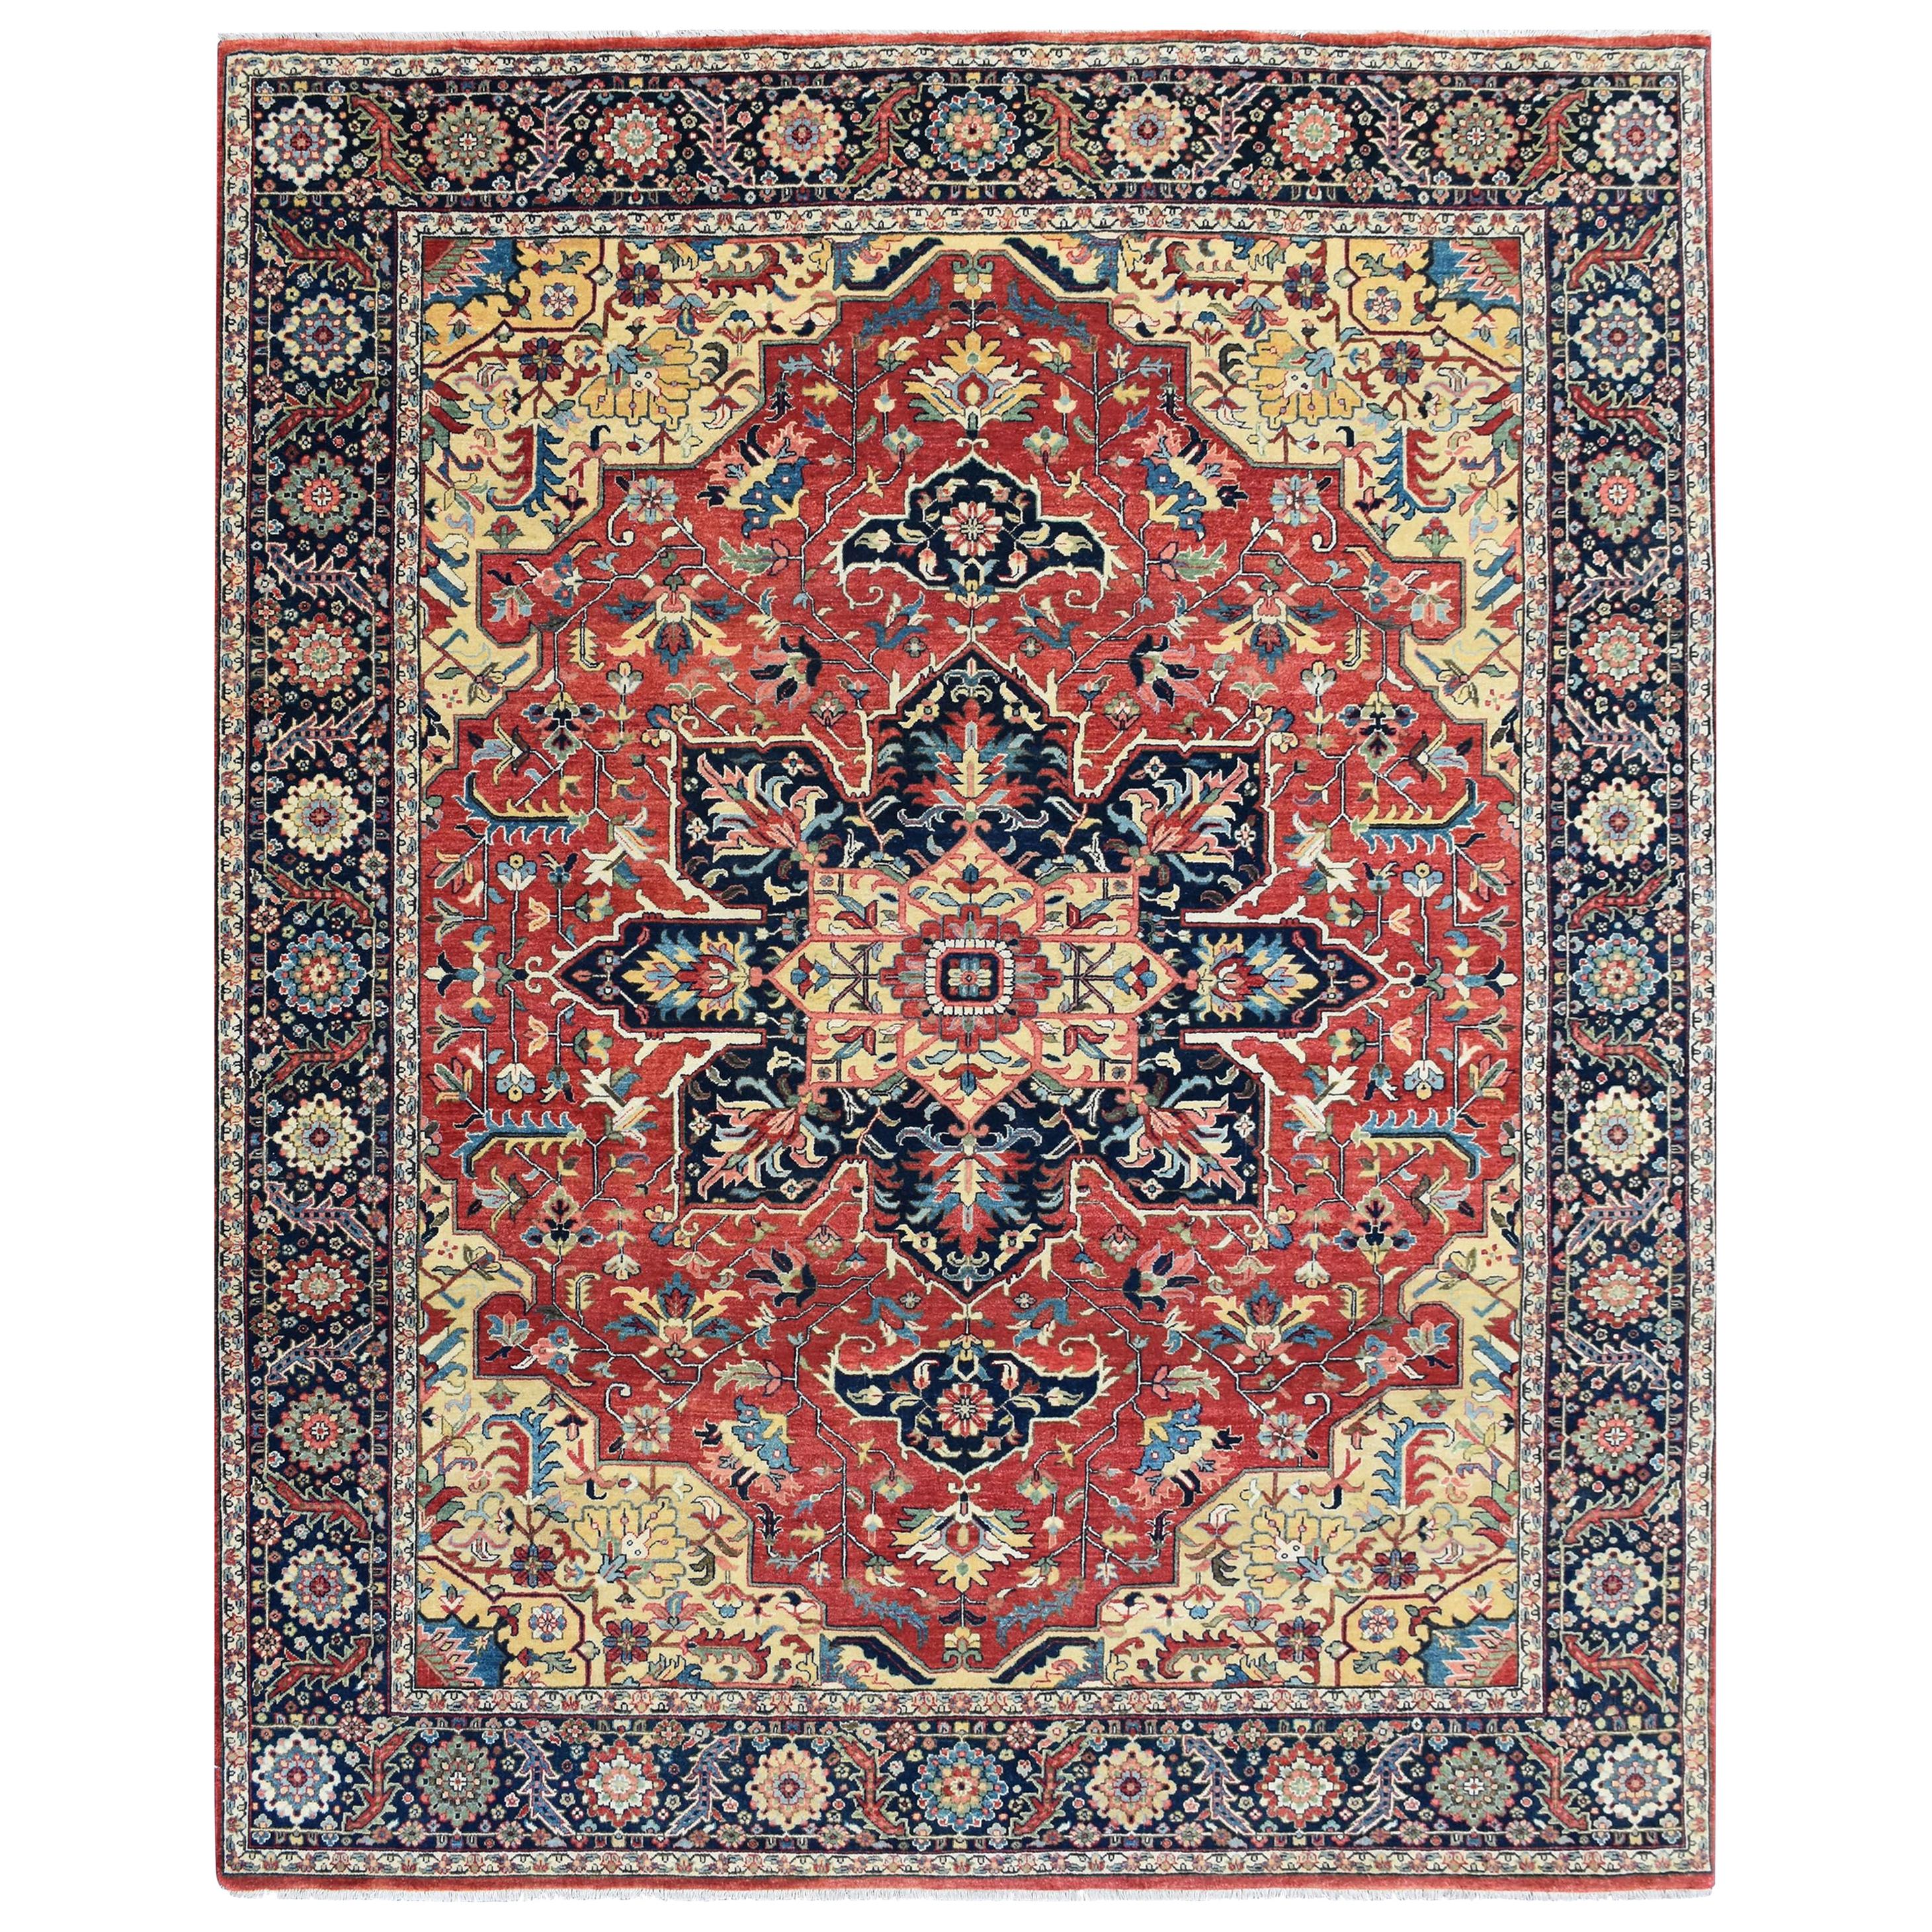 Wunderschöner neuer indischer Teppich im Heriz-Design aus Persien